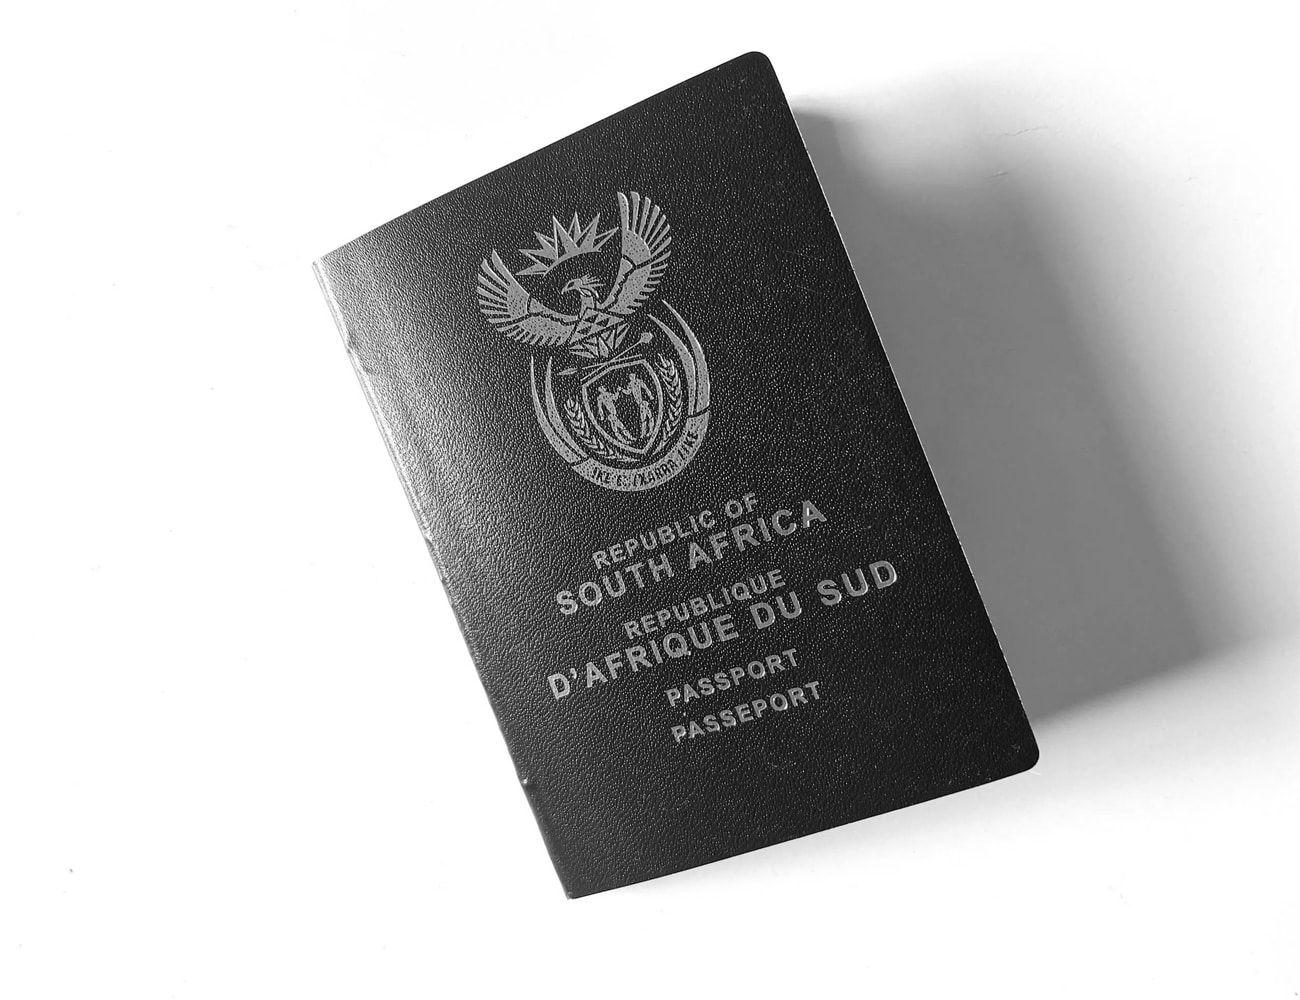 A South African Passport